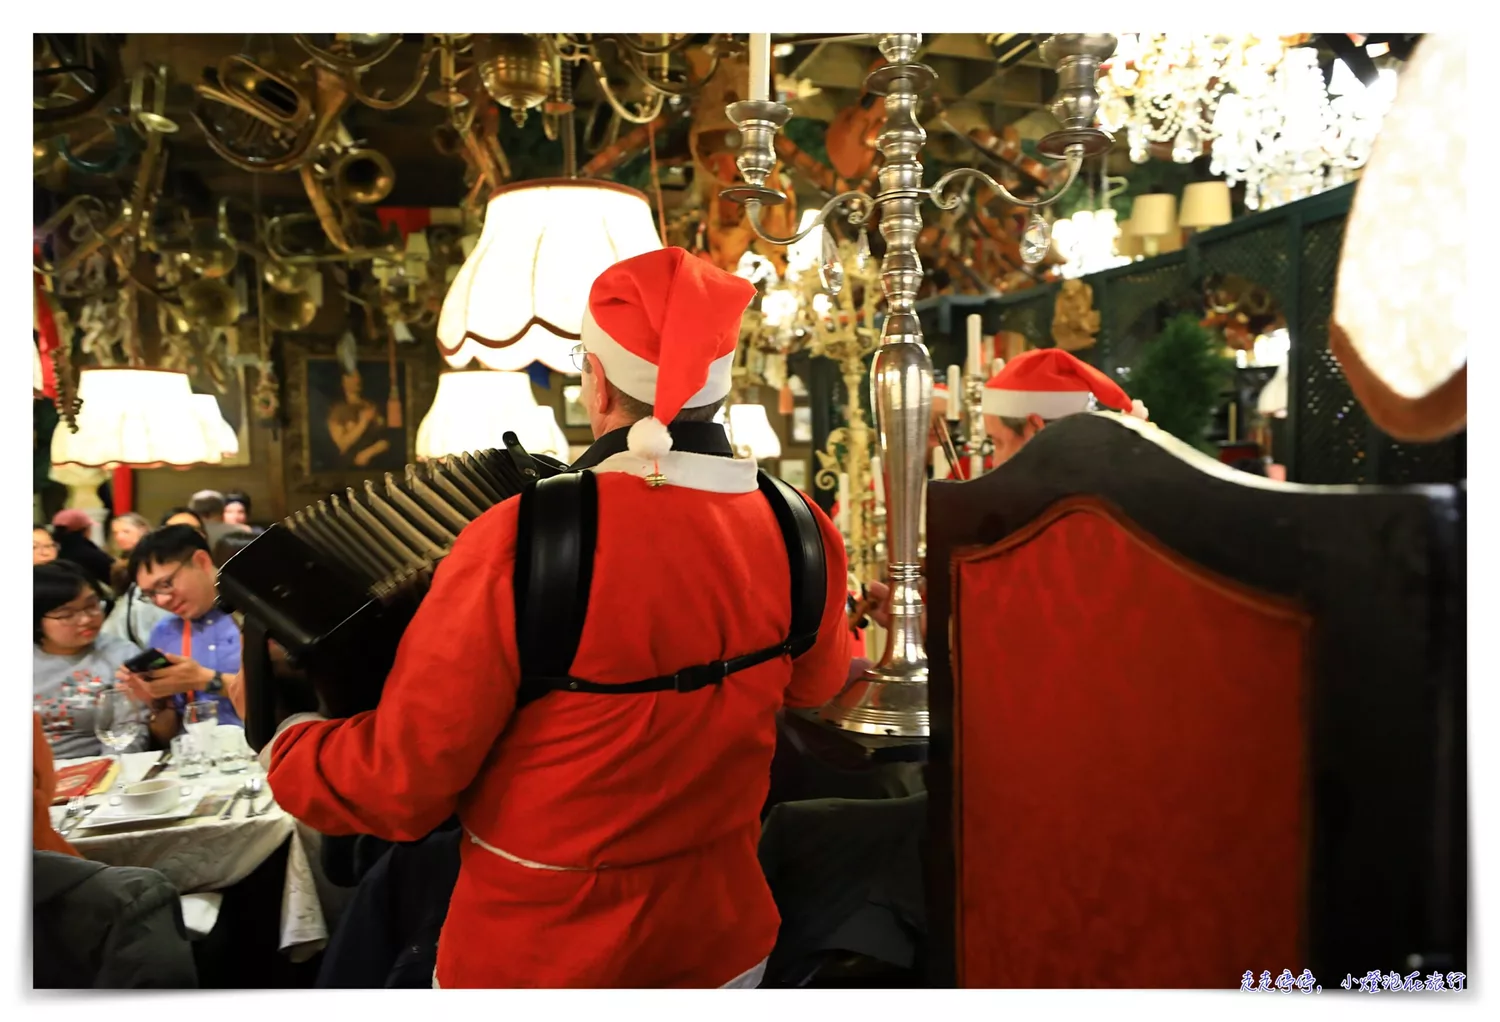 紅頂商人宴Marchfelderhof｜維也納周邊浮誇網美餐廳、名人教宗也到訪過的浮誇餐廳，聖誕晚宴、現場音樂演奏、好吃餐點，連廁所都很嗨～